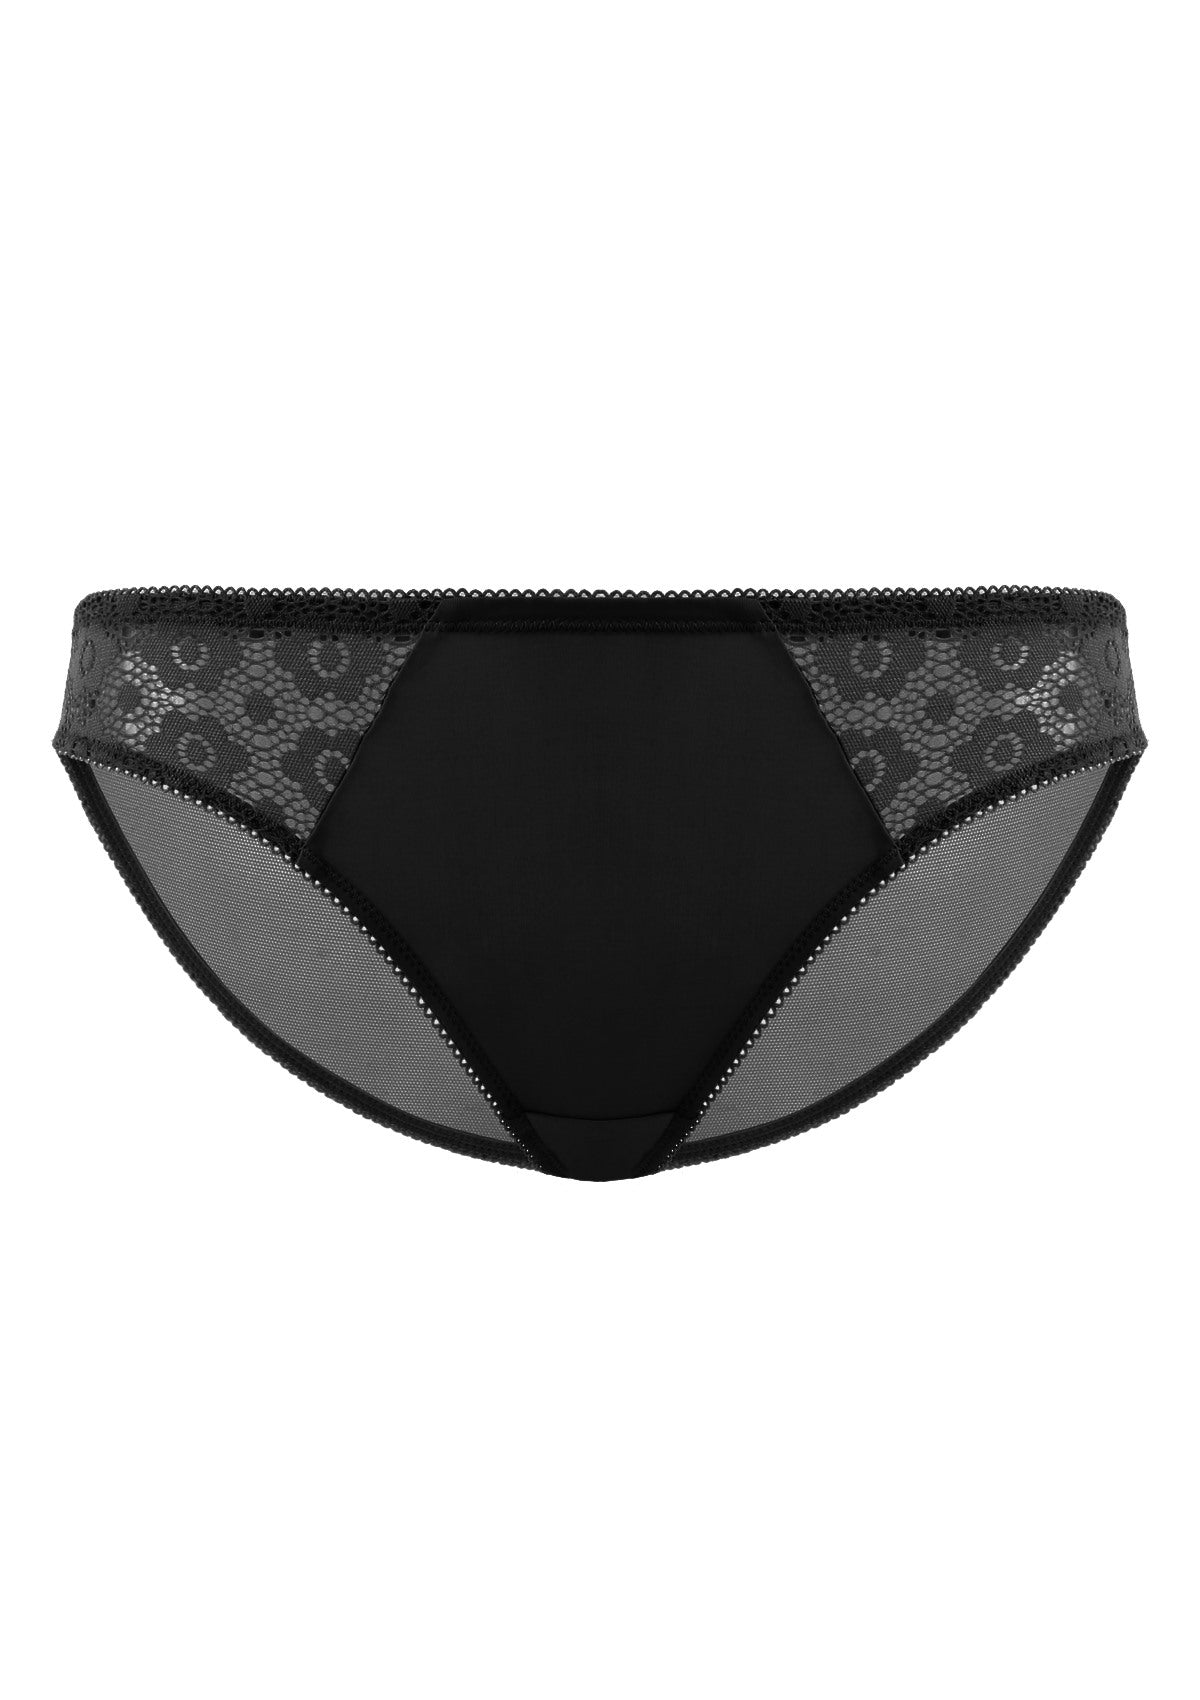 HSIA Serena Comfortable Trendy Lace Trim Bikini Underwear - XL / Nude